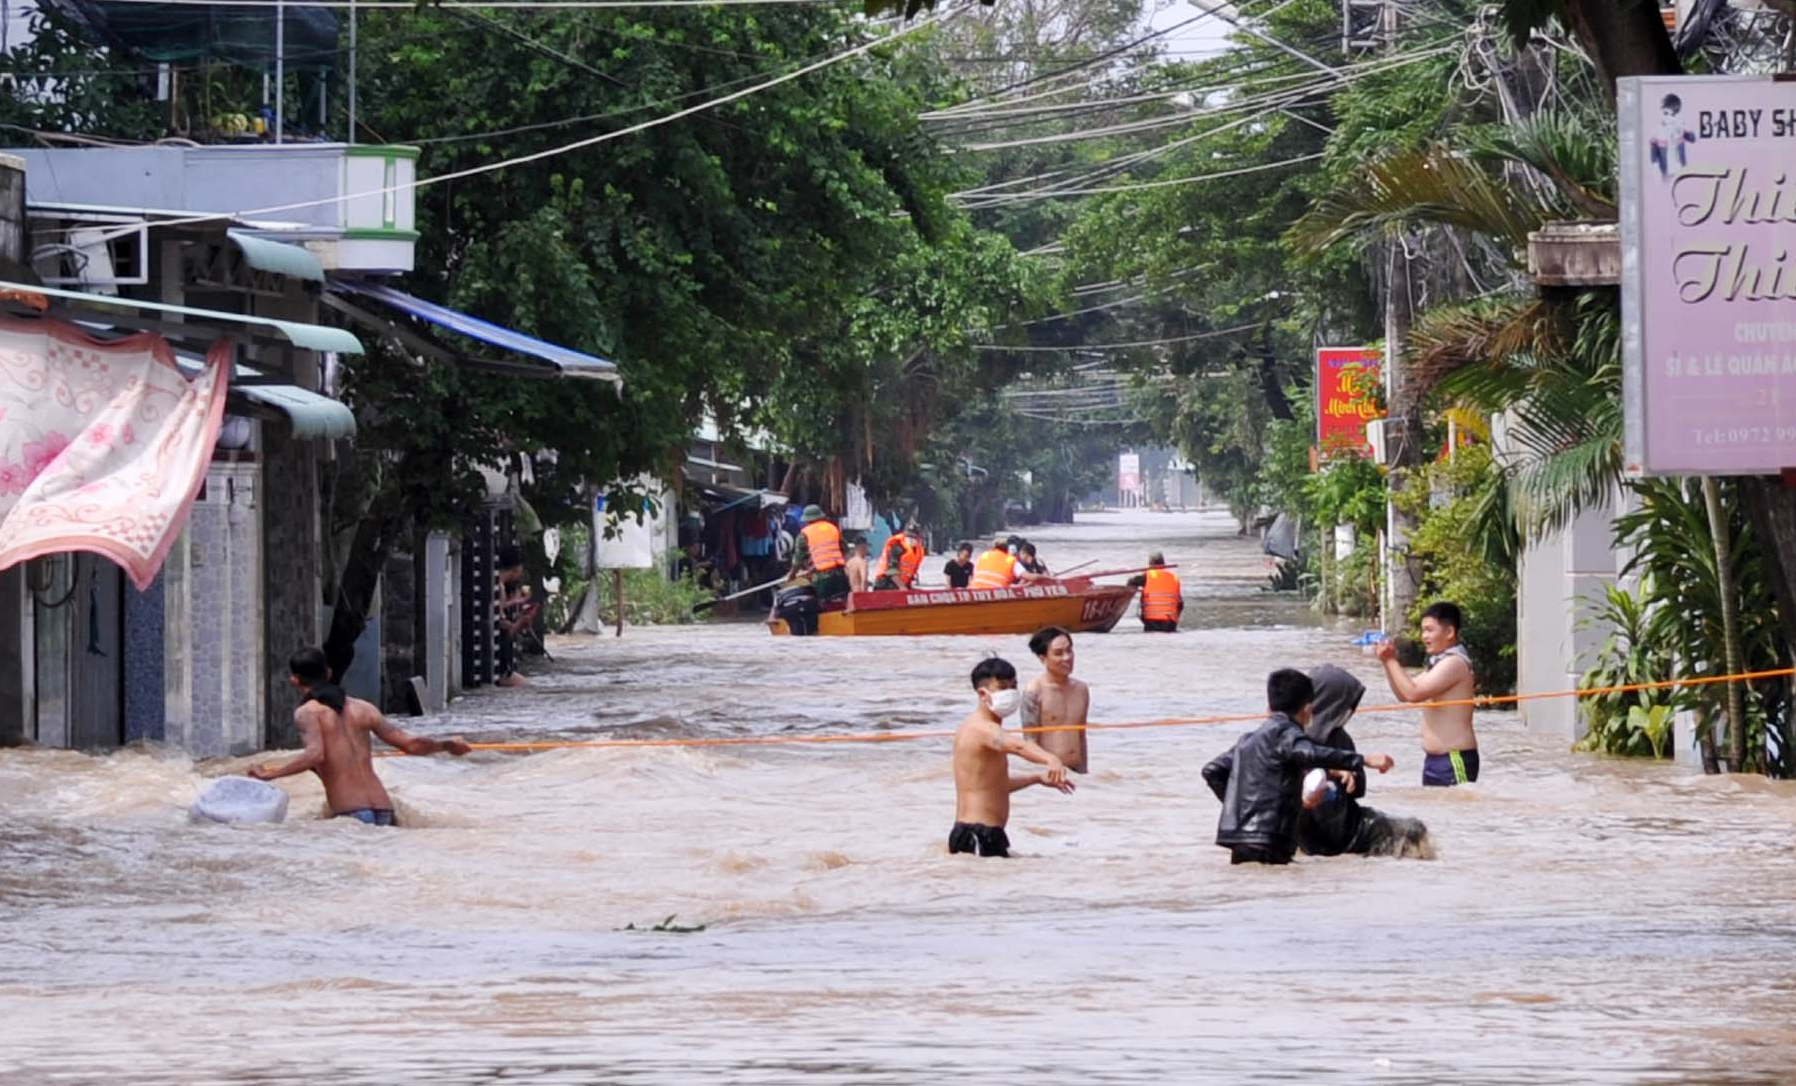 Đợt mưa lũ hồi tháng 11/2021, các hồ thủy lợi, thủy điện trên thượng nguồn sông Ba đồng loạt xả lũ khiến tỉnh Phú Yên chìm trong biển nước. Ảnh: KS.